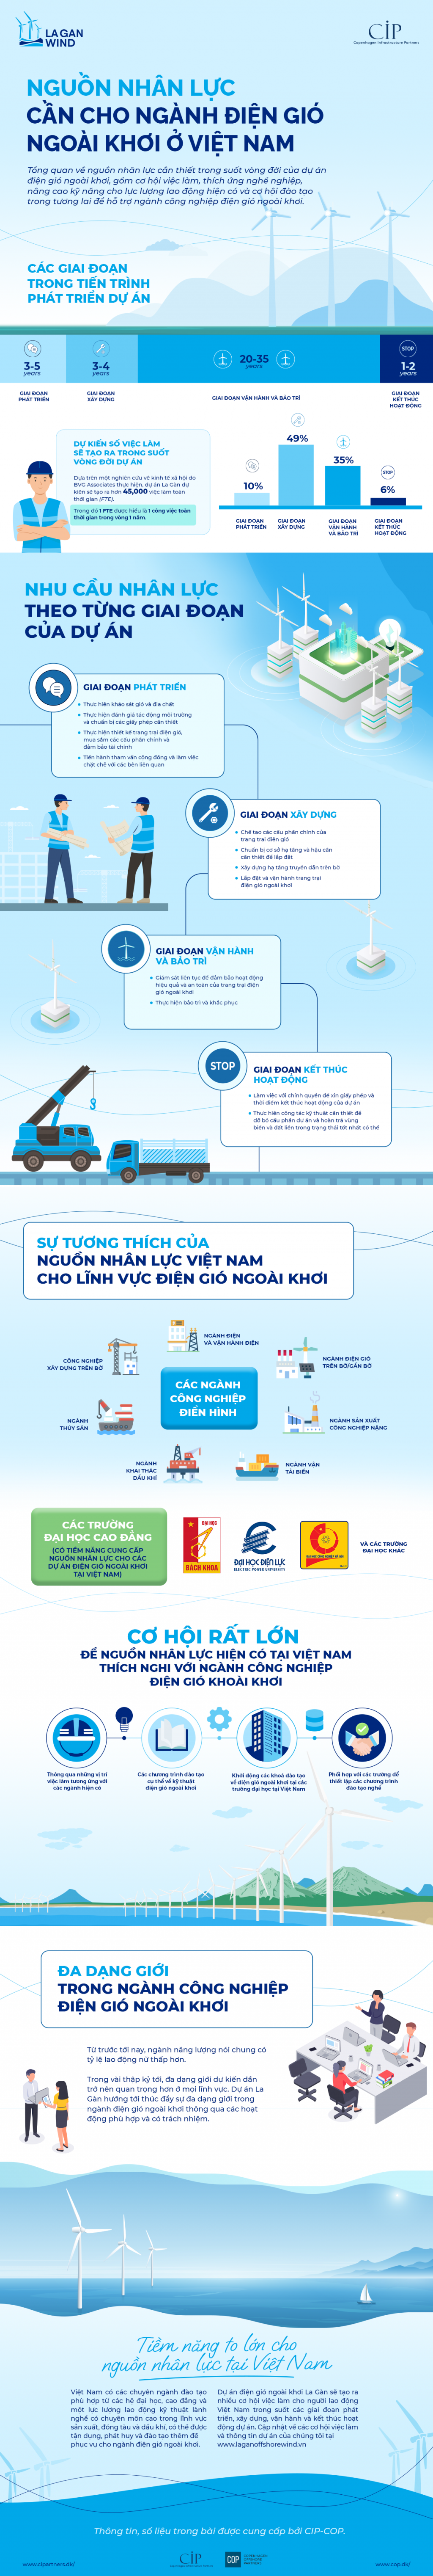 Nguồn nhân lực cho ngành điện gió ngoài khơi ở Việt Nam